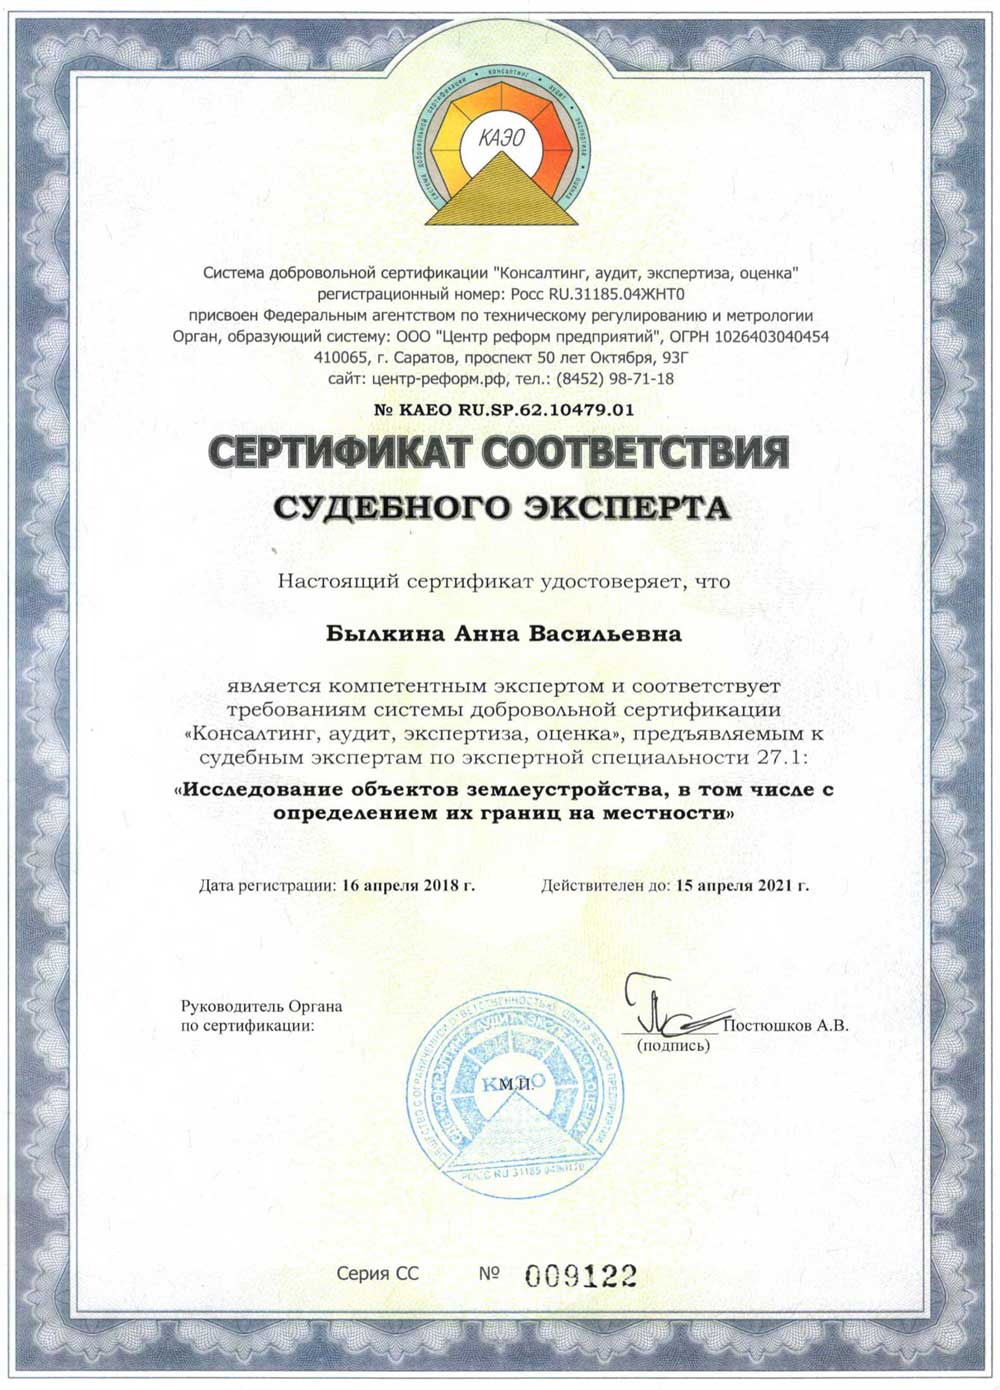  Сертификат судебного эксперта